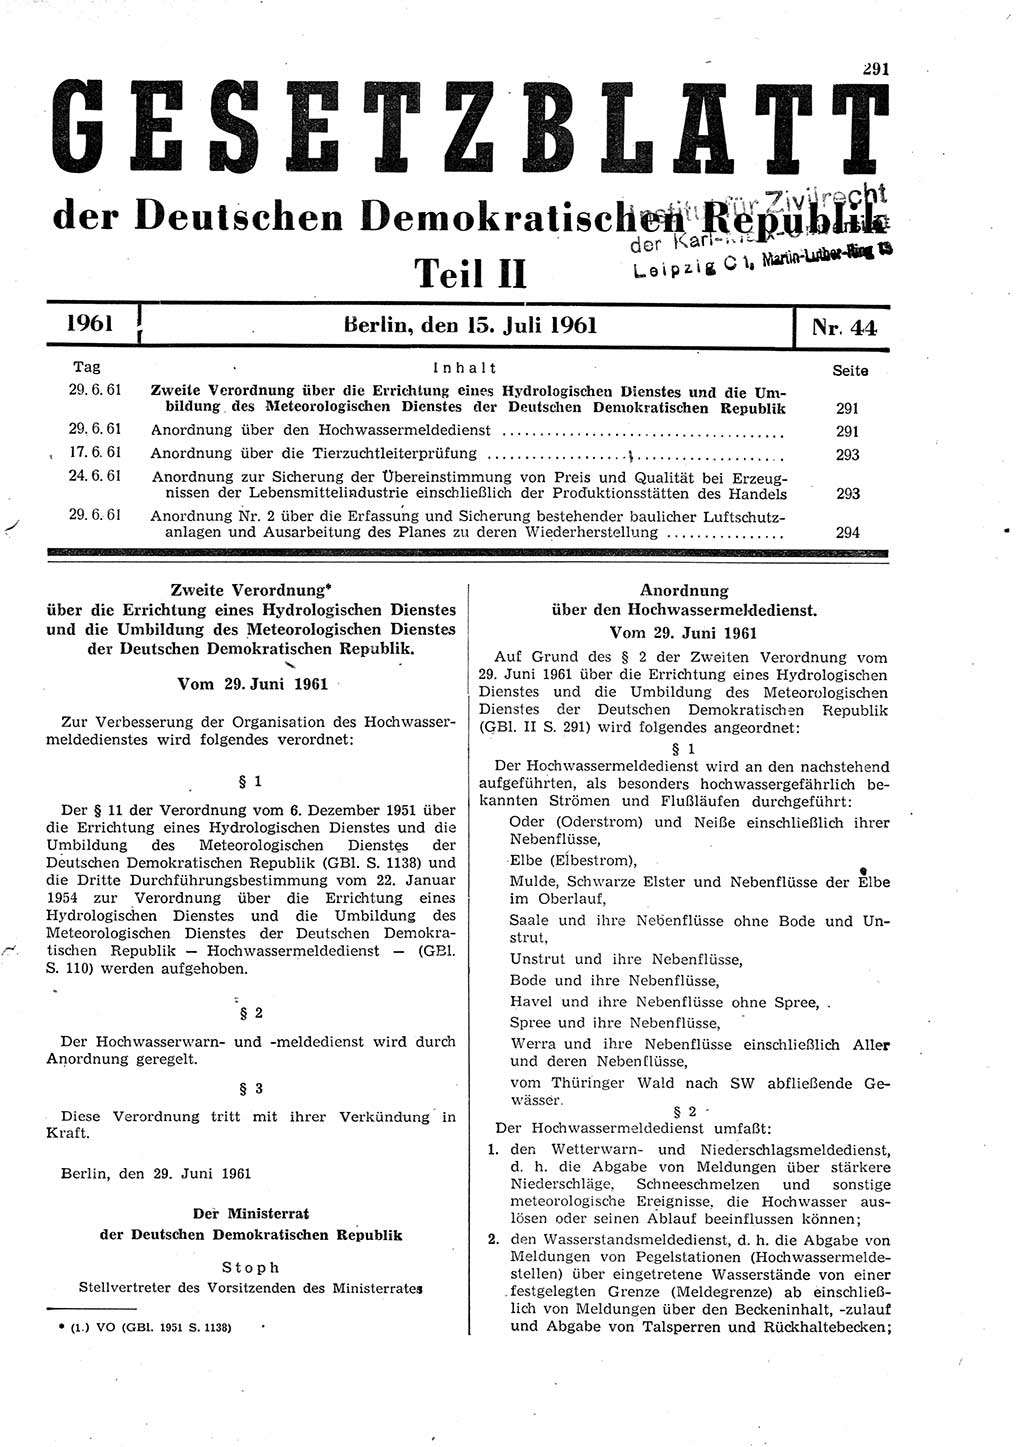 Gesetzblatt (GBl.) der Deutschen Demokratischen Republik (DDR) Teil ⅠⅠ 1961, Seite 291 (GBl. DDR ⅠⅠ 1961, S. 291)